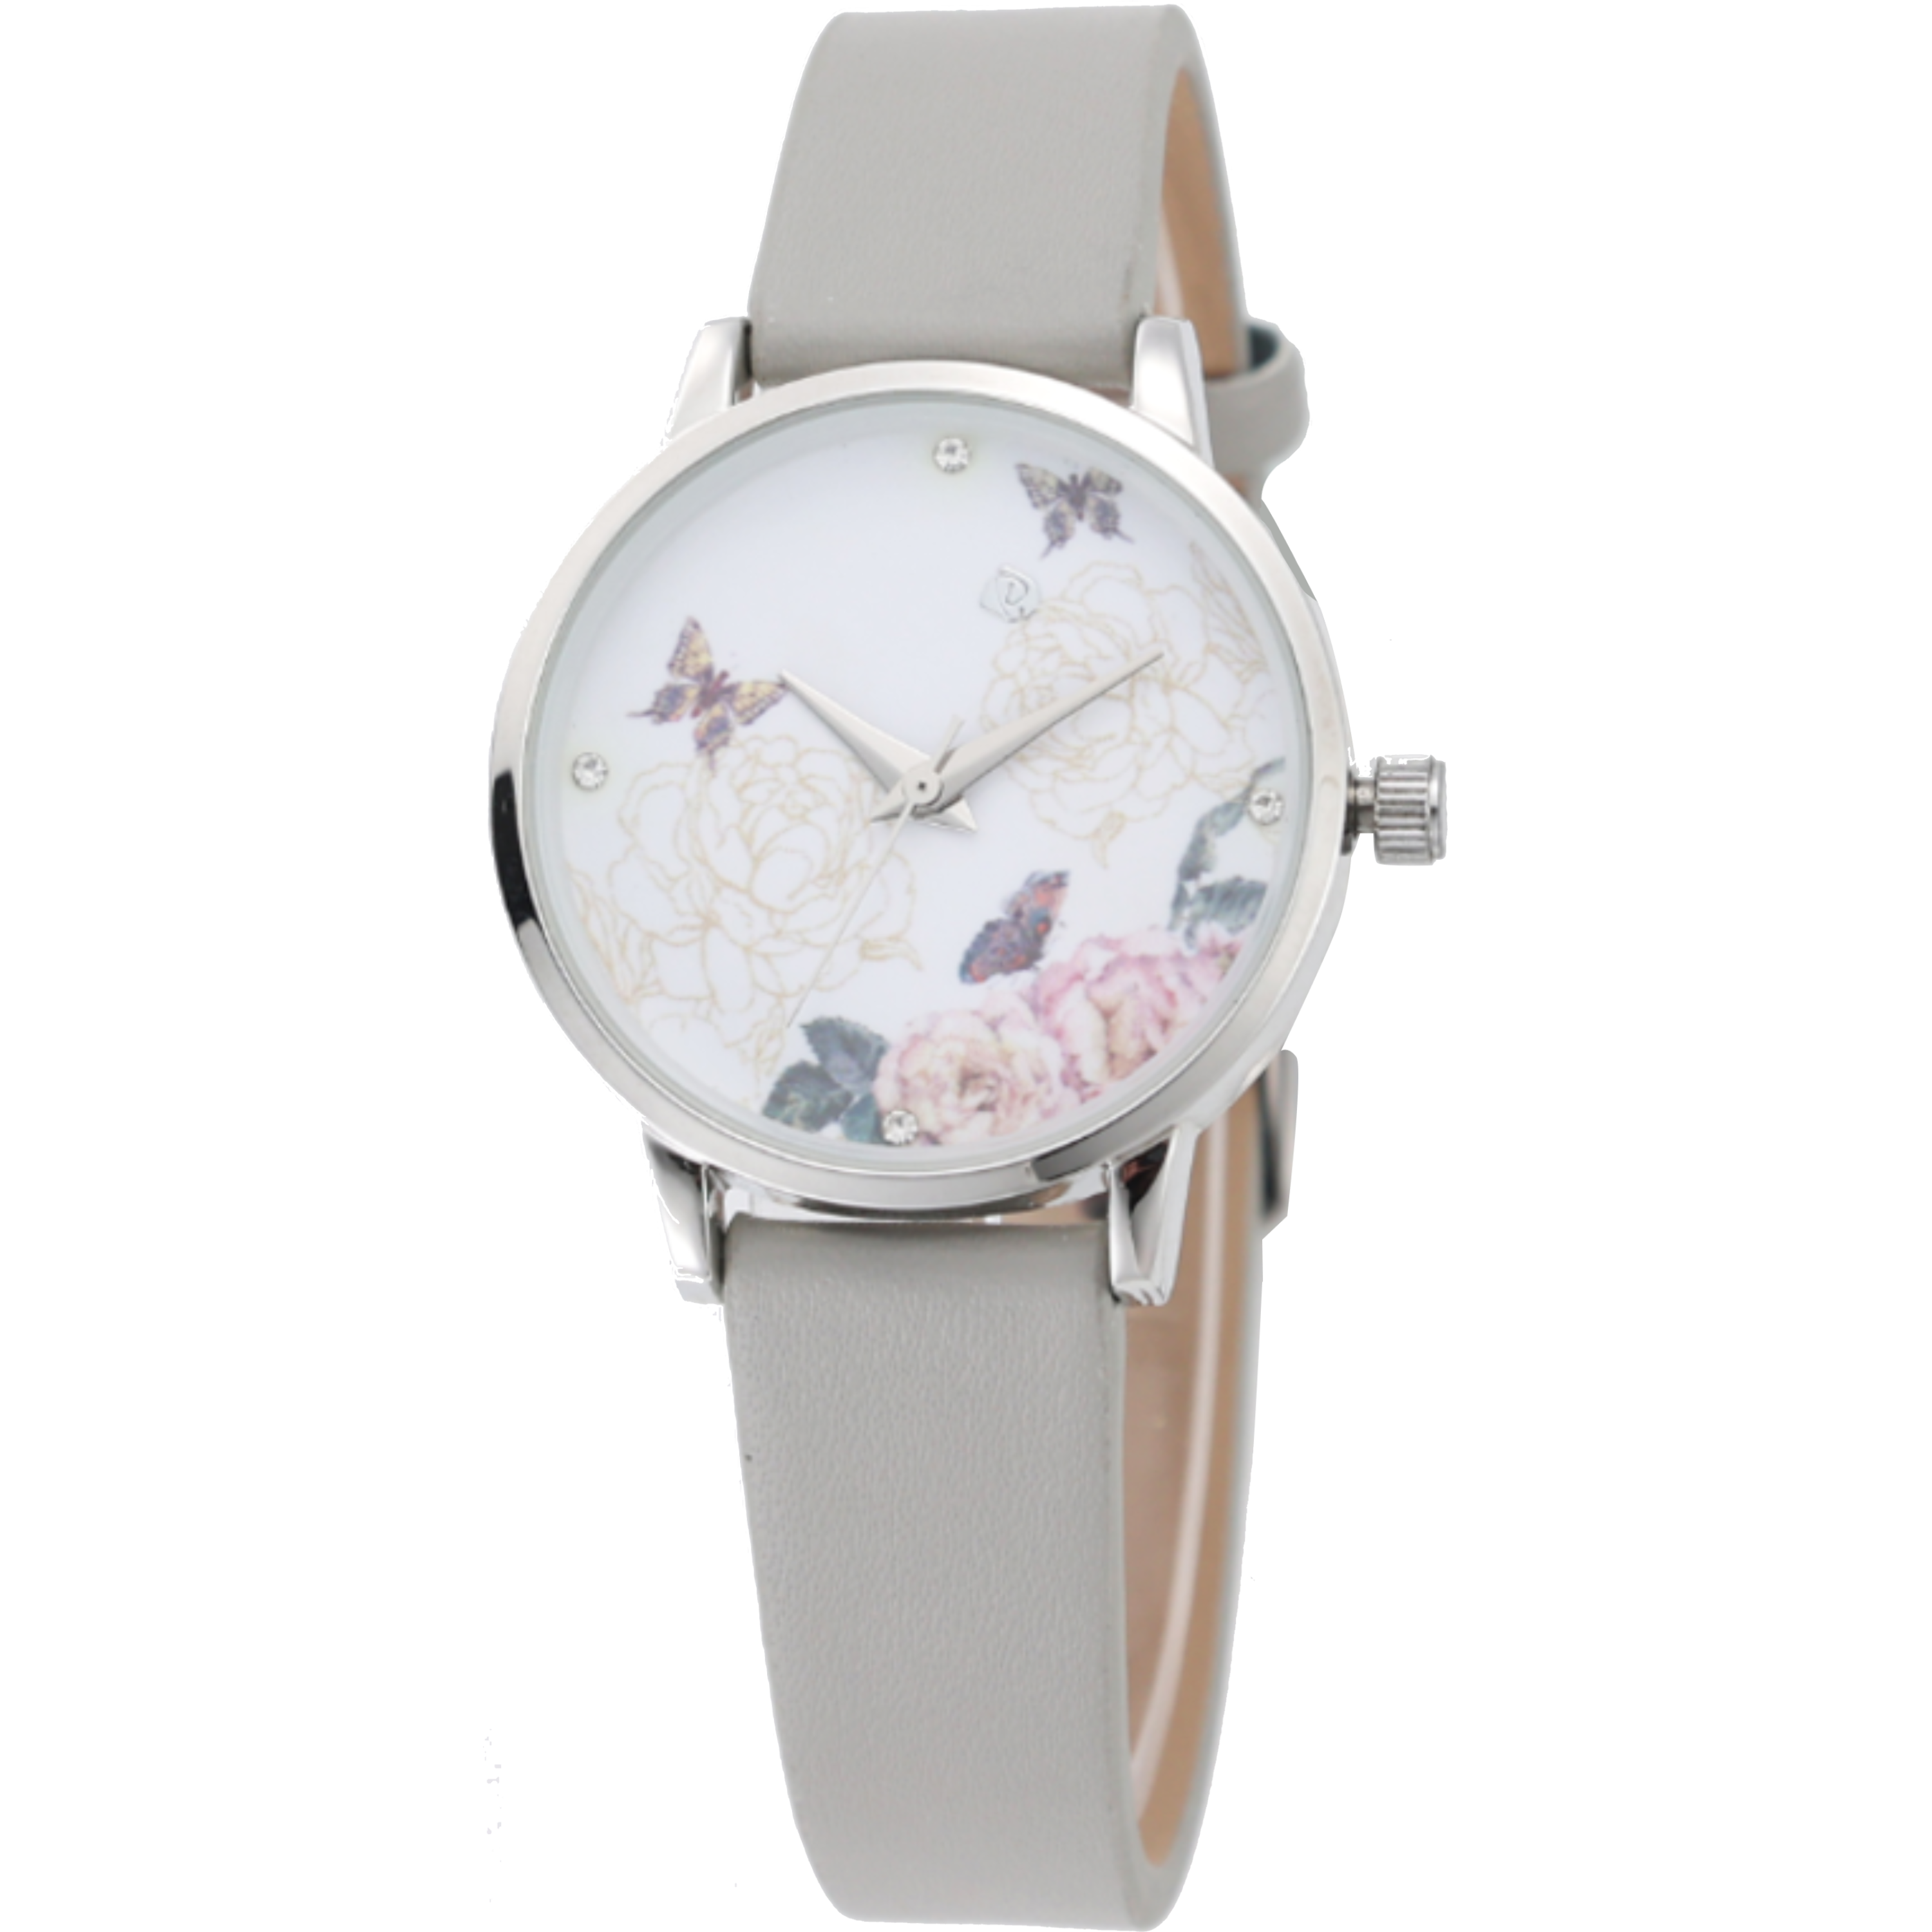 שעון יד לאישה עם צמיד COMTEX SY40 32mm - צבע אפור אחריות לשנה ע